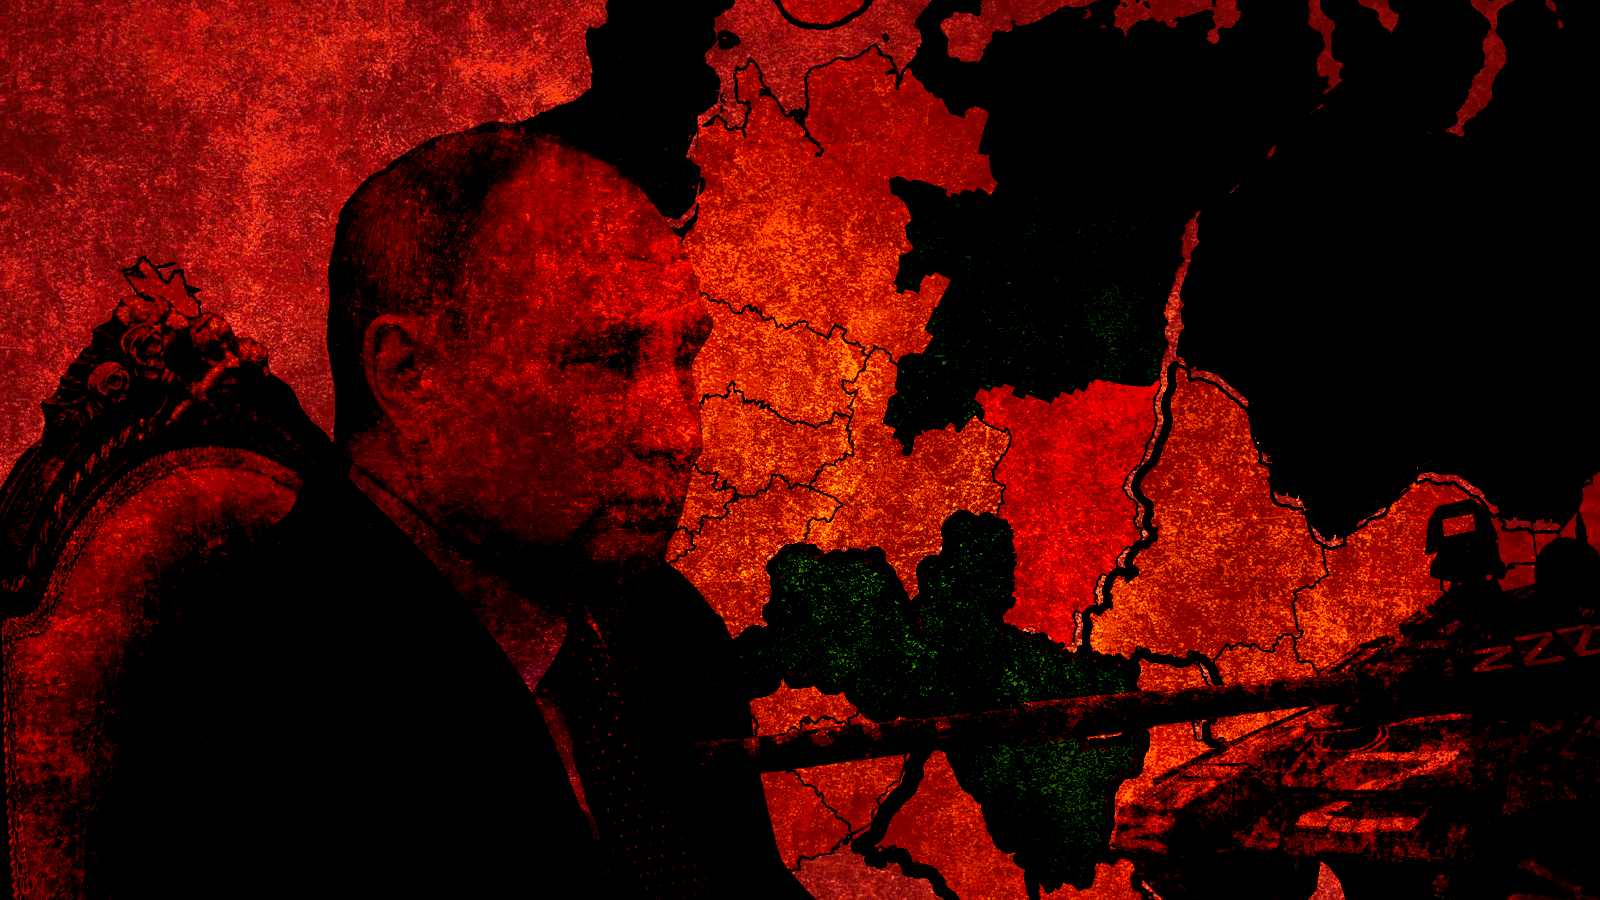 Период полураспада: как война в Украине и санкции могут привести к дезинтеграции России